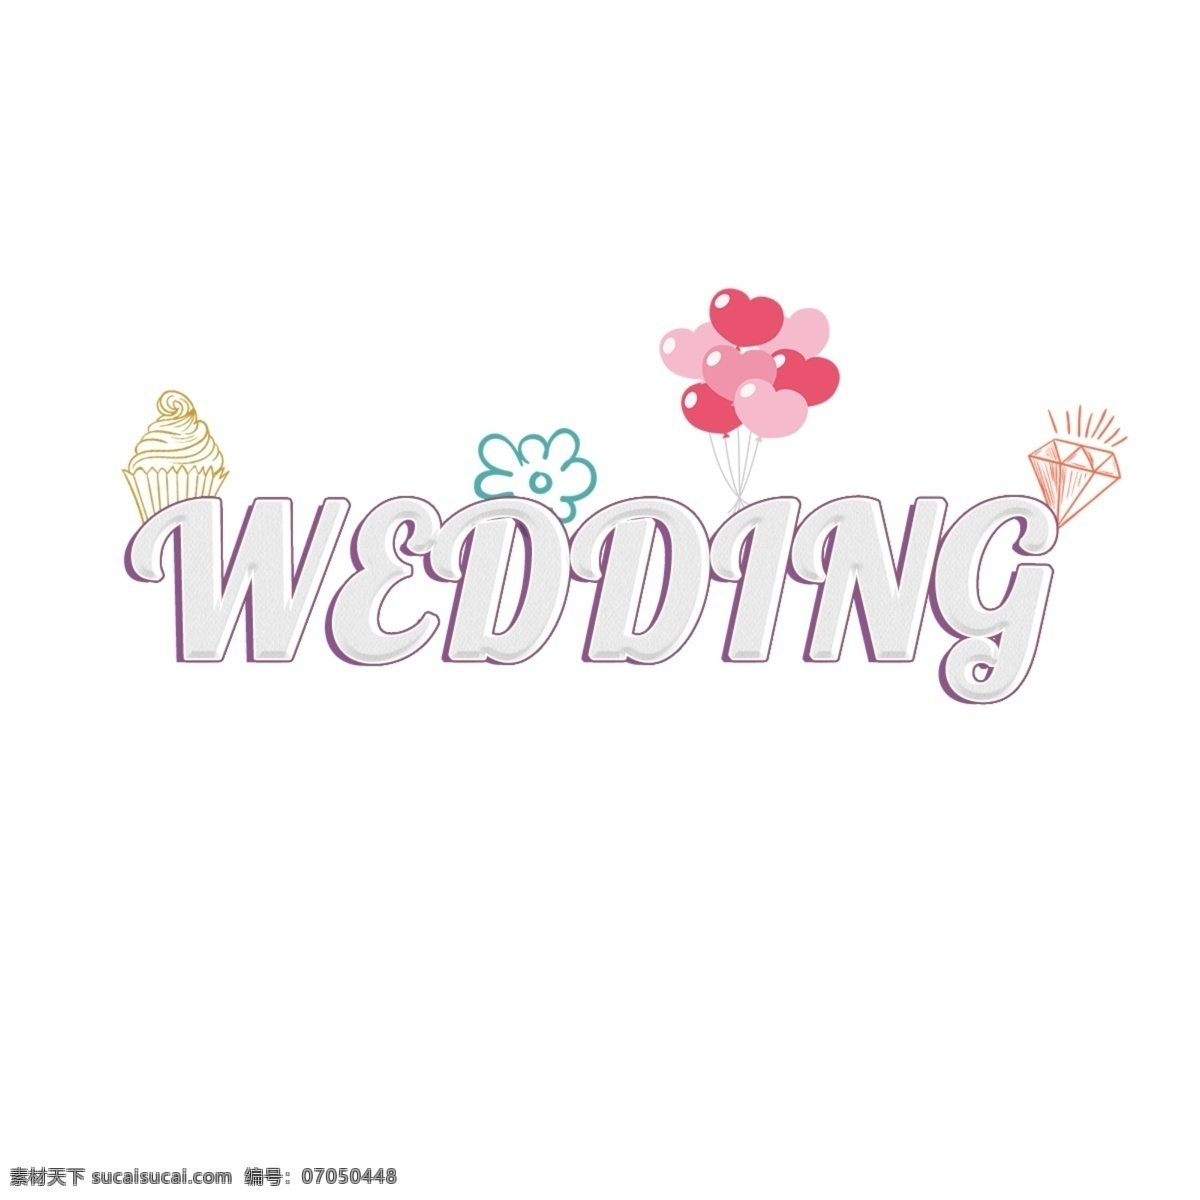 可爱 样式 白色 婚礼 抽象 字体 杯子蛋糕 气球 钻石 花 爱 紫色边框 背景 抽象字体 可编辑的字体 书法